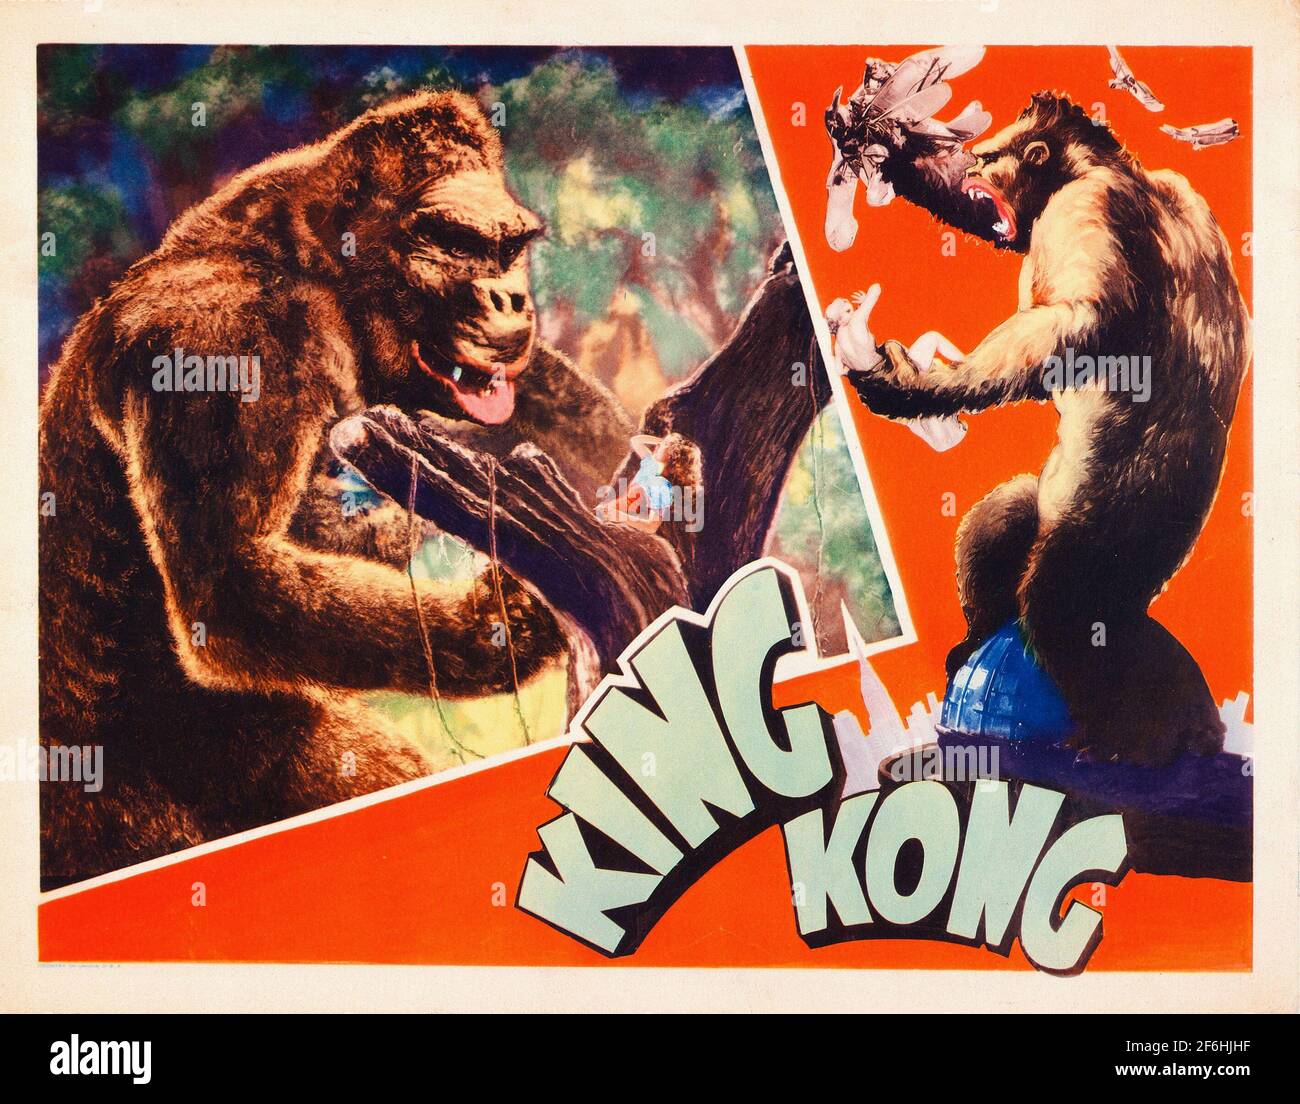 Biglietto della hall per il film King Kong del 1933. Con Fay Wray, Bruce Cabot, Robert Armstrong, Frank Reicher. Avventura / Fantasy / azione / Romance. Foto Stock